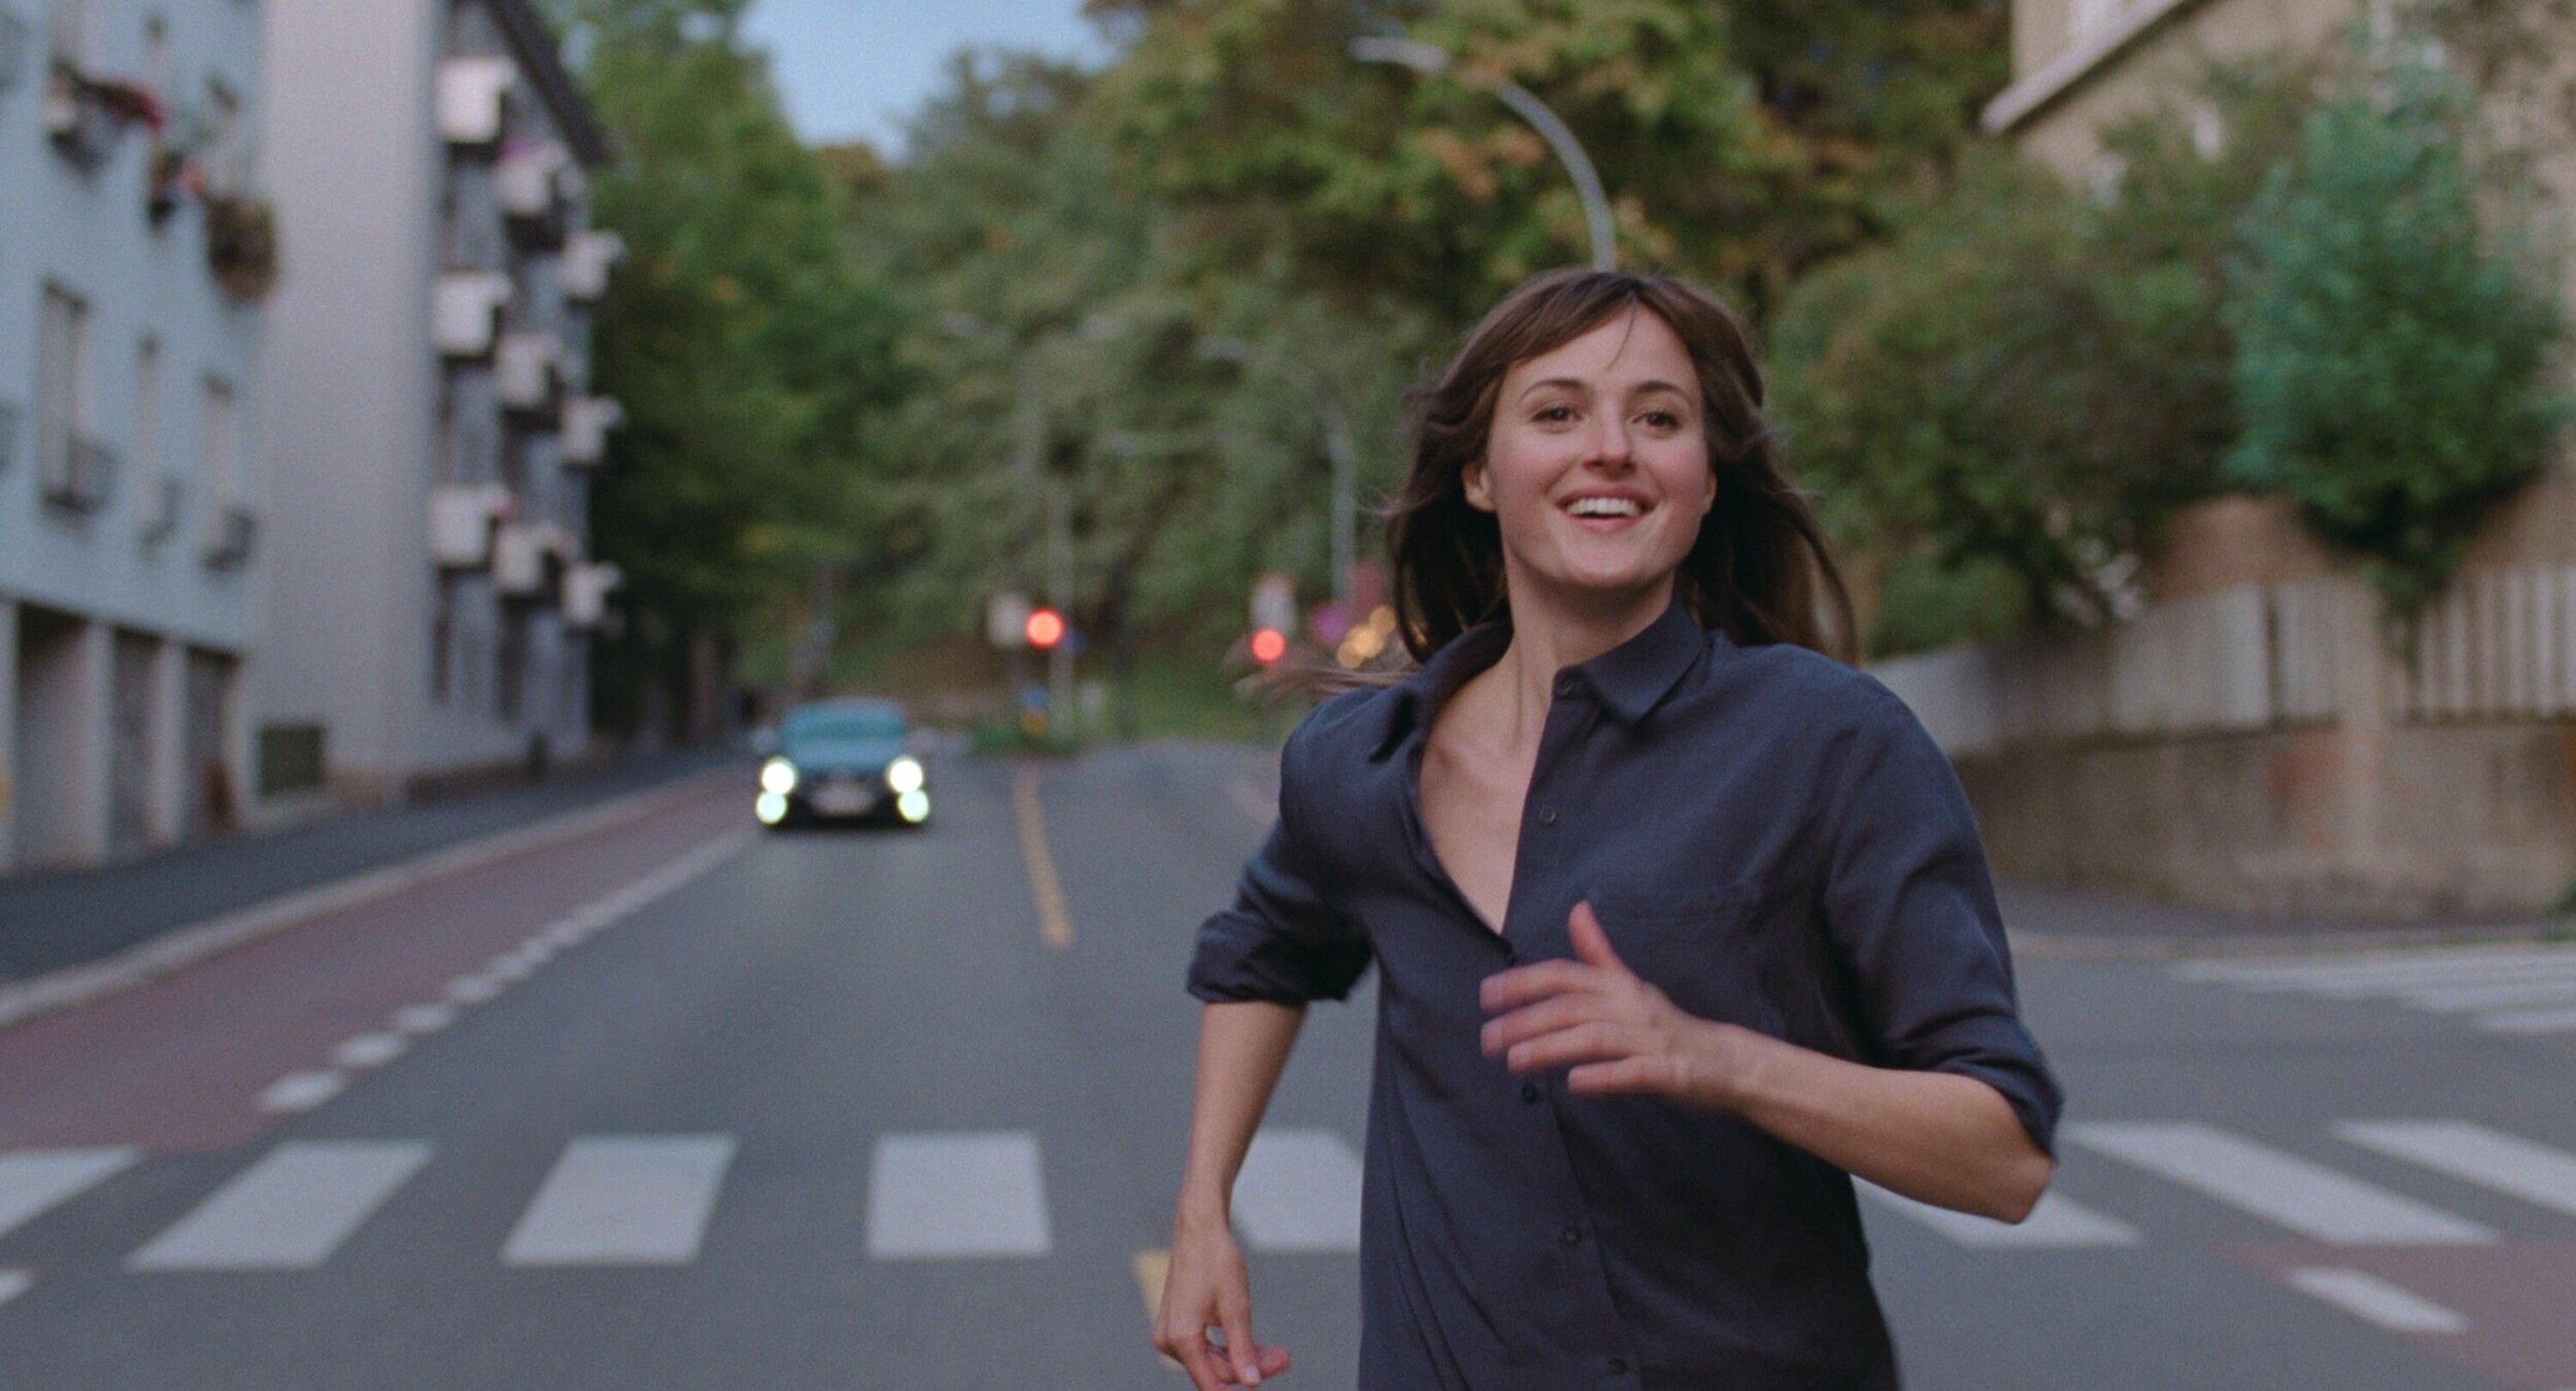 Julie opplever en åpenbaring, og løper gjennom Oslos gater i lykkerus